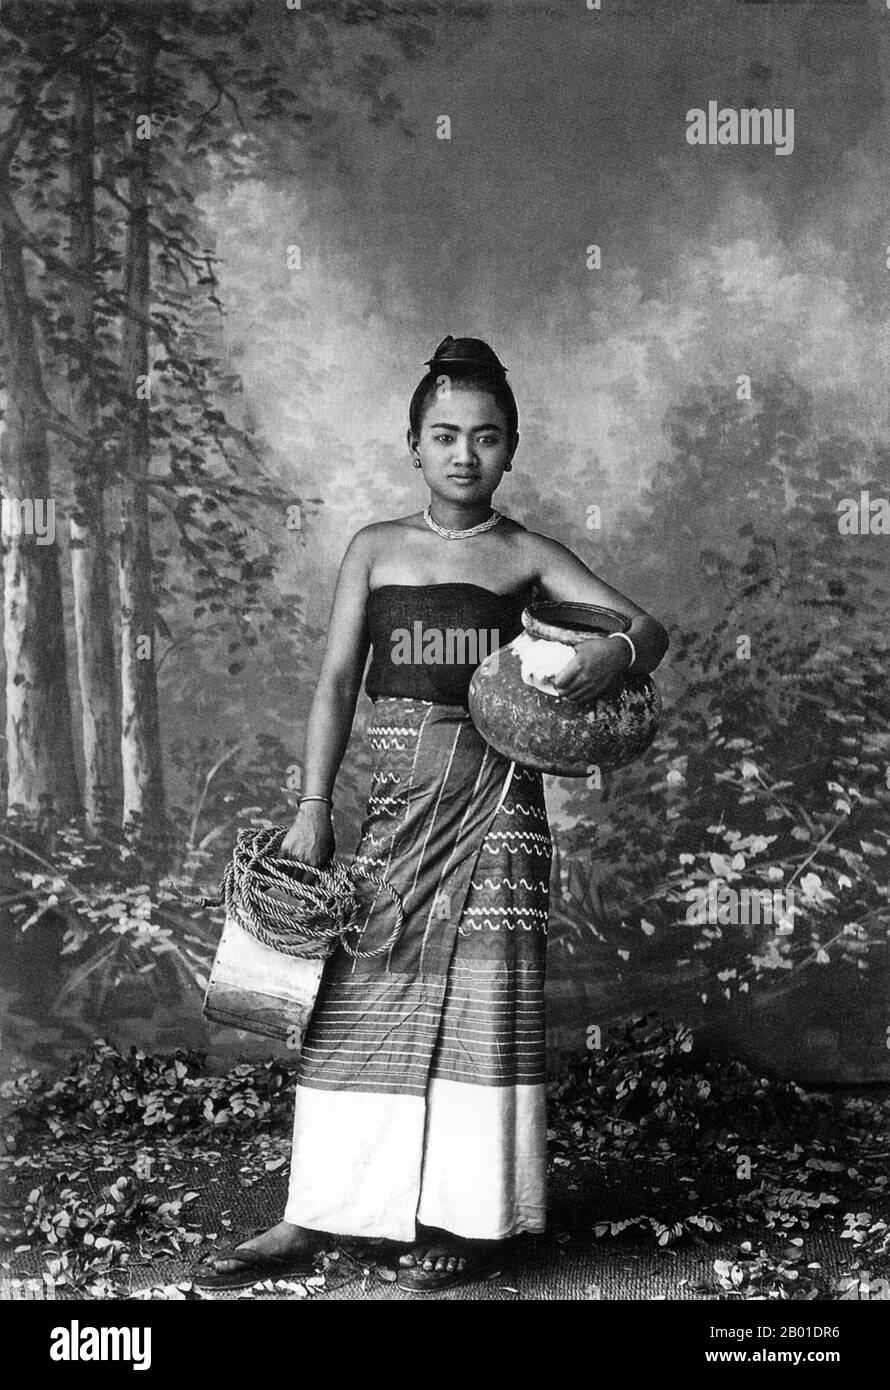 Birmanie/Myanmar: Portrait de studio représentant une beauté de village supposée de retour du puits. Photo de Felice Beato (1832 - 29 janvier 1909), c. 1895. Felice Beato, également connu sous le nom de Felix Beato, était un photographe italien-britannique. Il a été l'un des premiers à prendre des photos en Asie de l'est et l'un des premiers photographes de guerre. Il est réputé pour ses œuvres de genre, ses portraits, ses vues et ses panoramas sur l'architecture et les paysages de l'Asie et de la Méditerranée. Les voyages de Beato lui ont donné l'occasion de créer des images de pays, de personnes et d'événements peu familiers à l'Occident. Banque D'Images